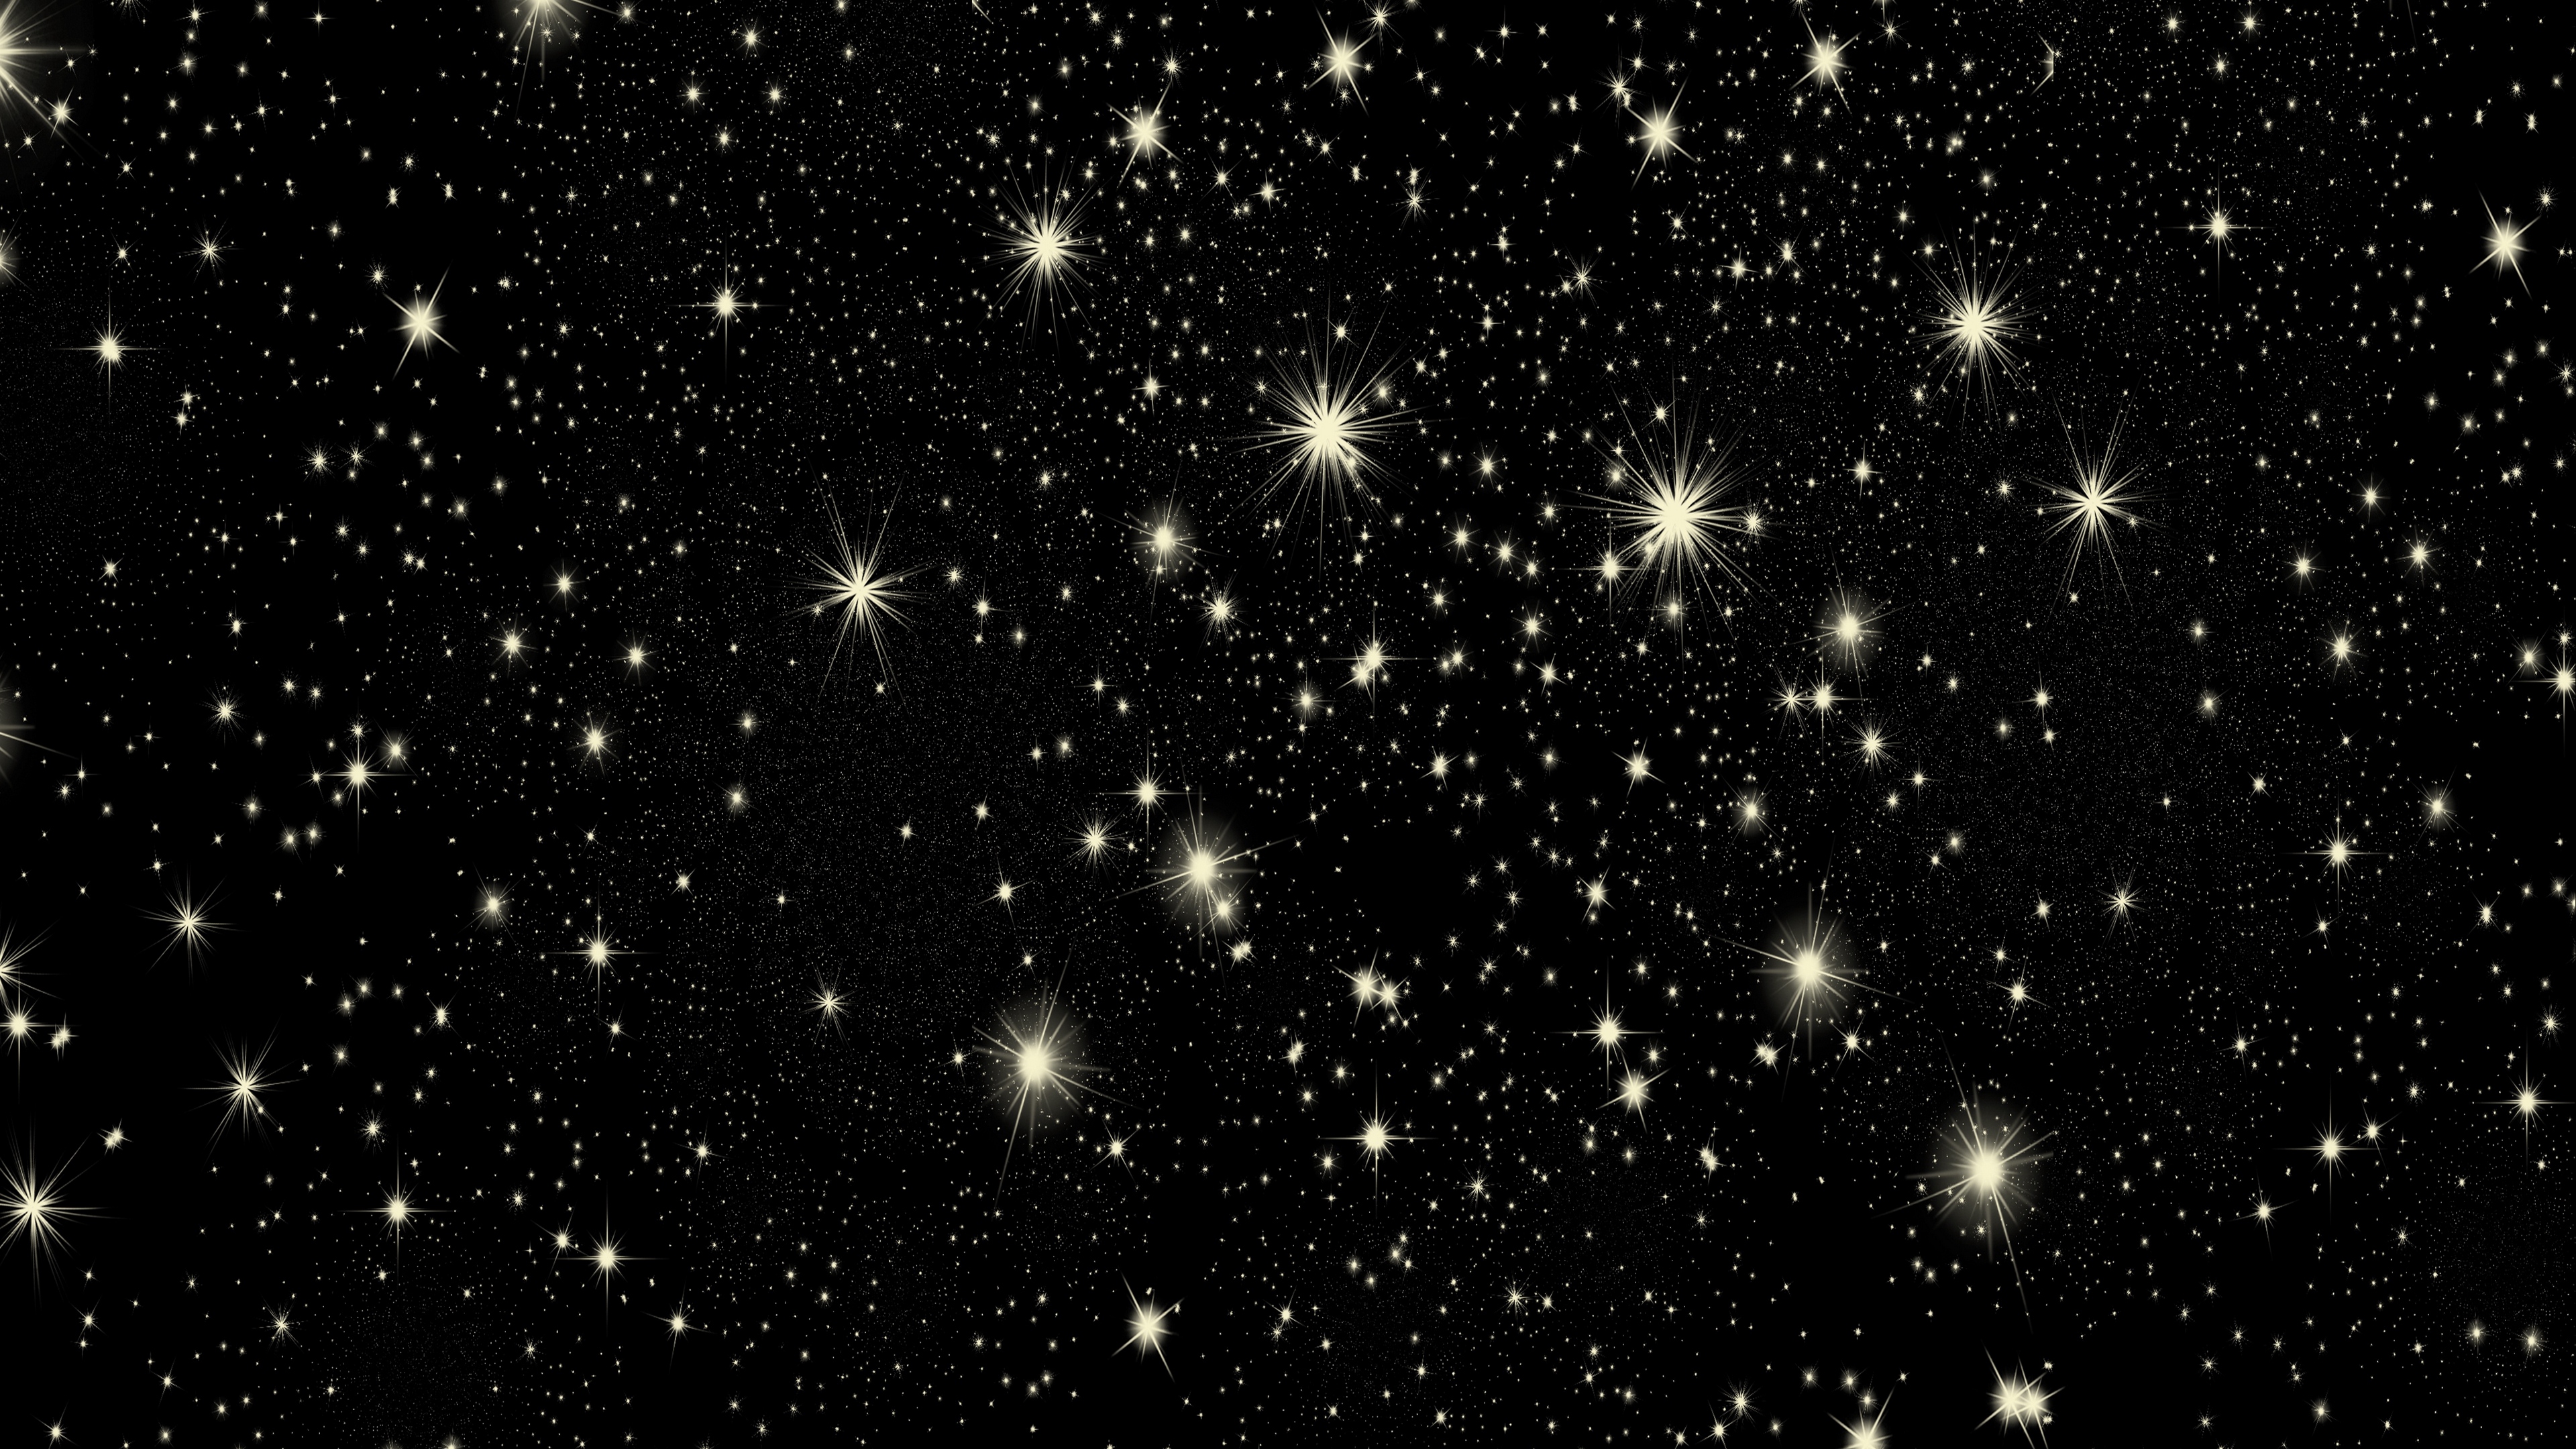 A Sky Full of Stars 4K wallpaper